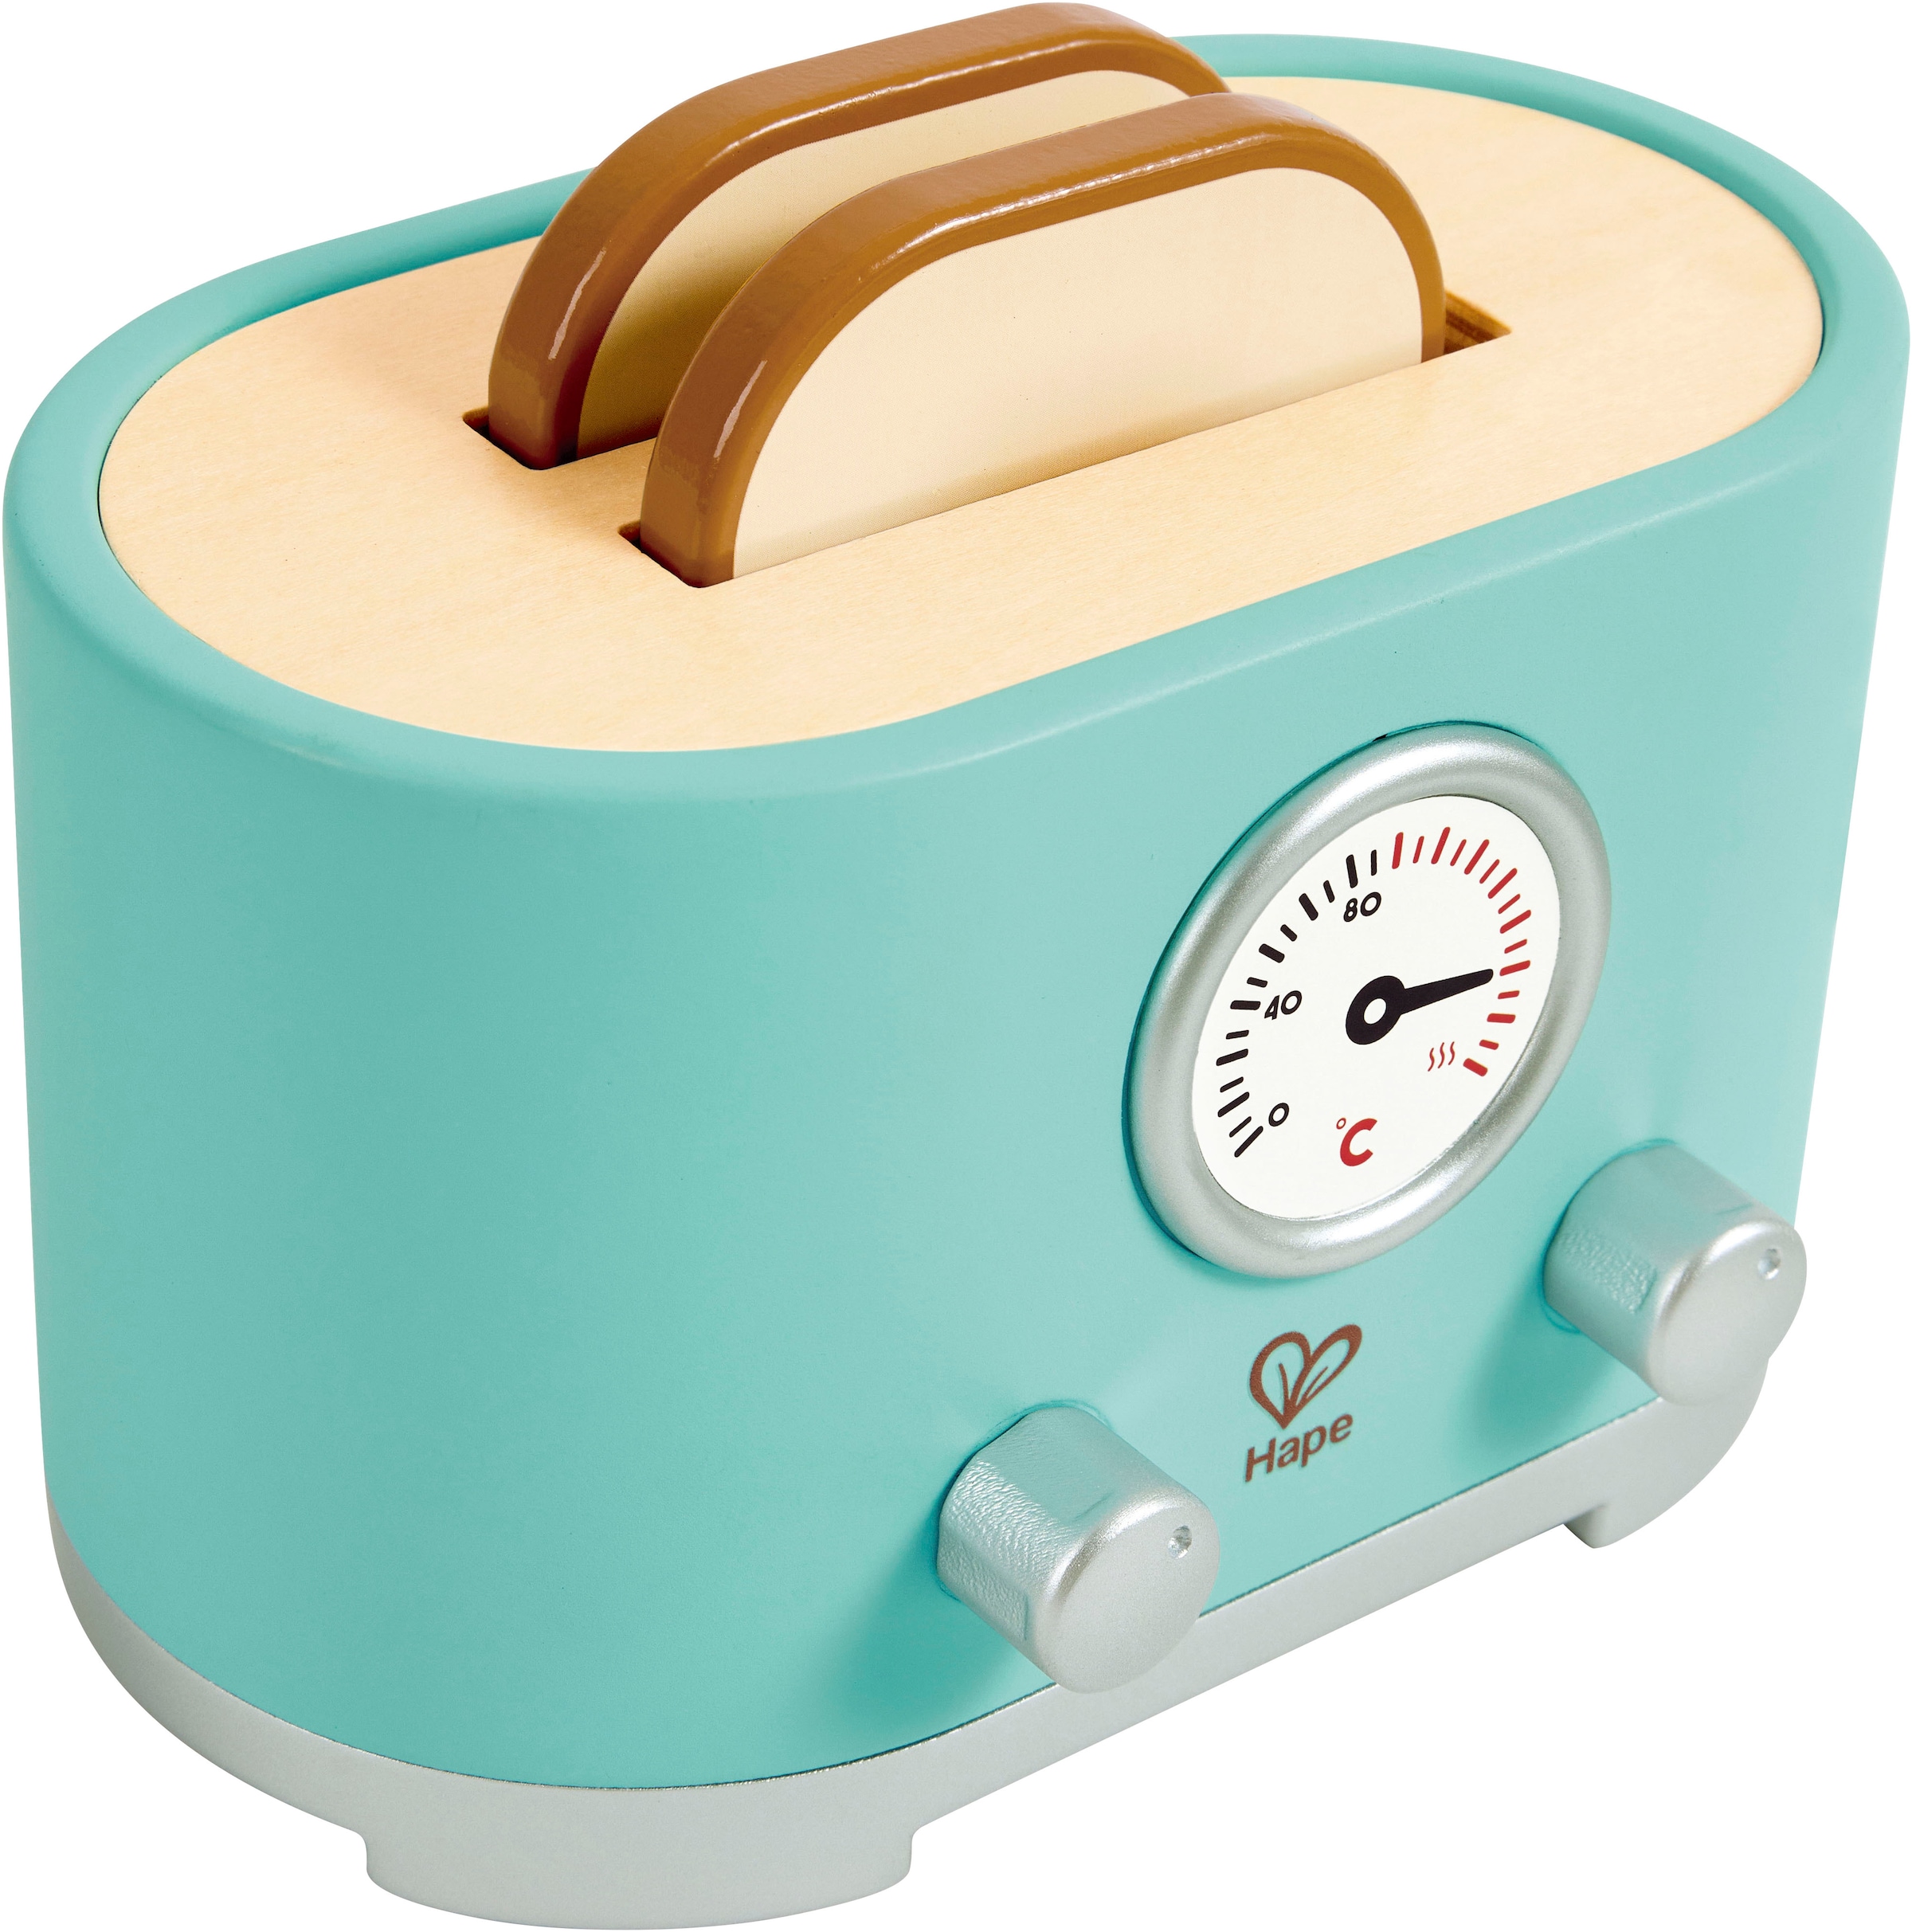 Hape Kinder-Toaster »Kling, Pop-Up-Toaster-Set«, (12 tlg.), aus Holz